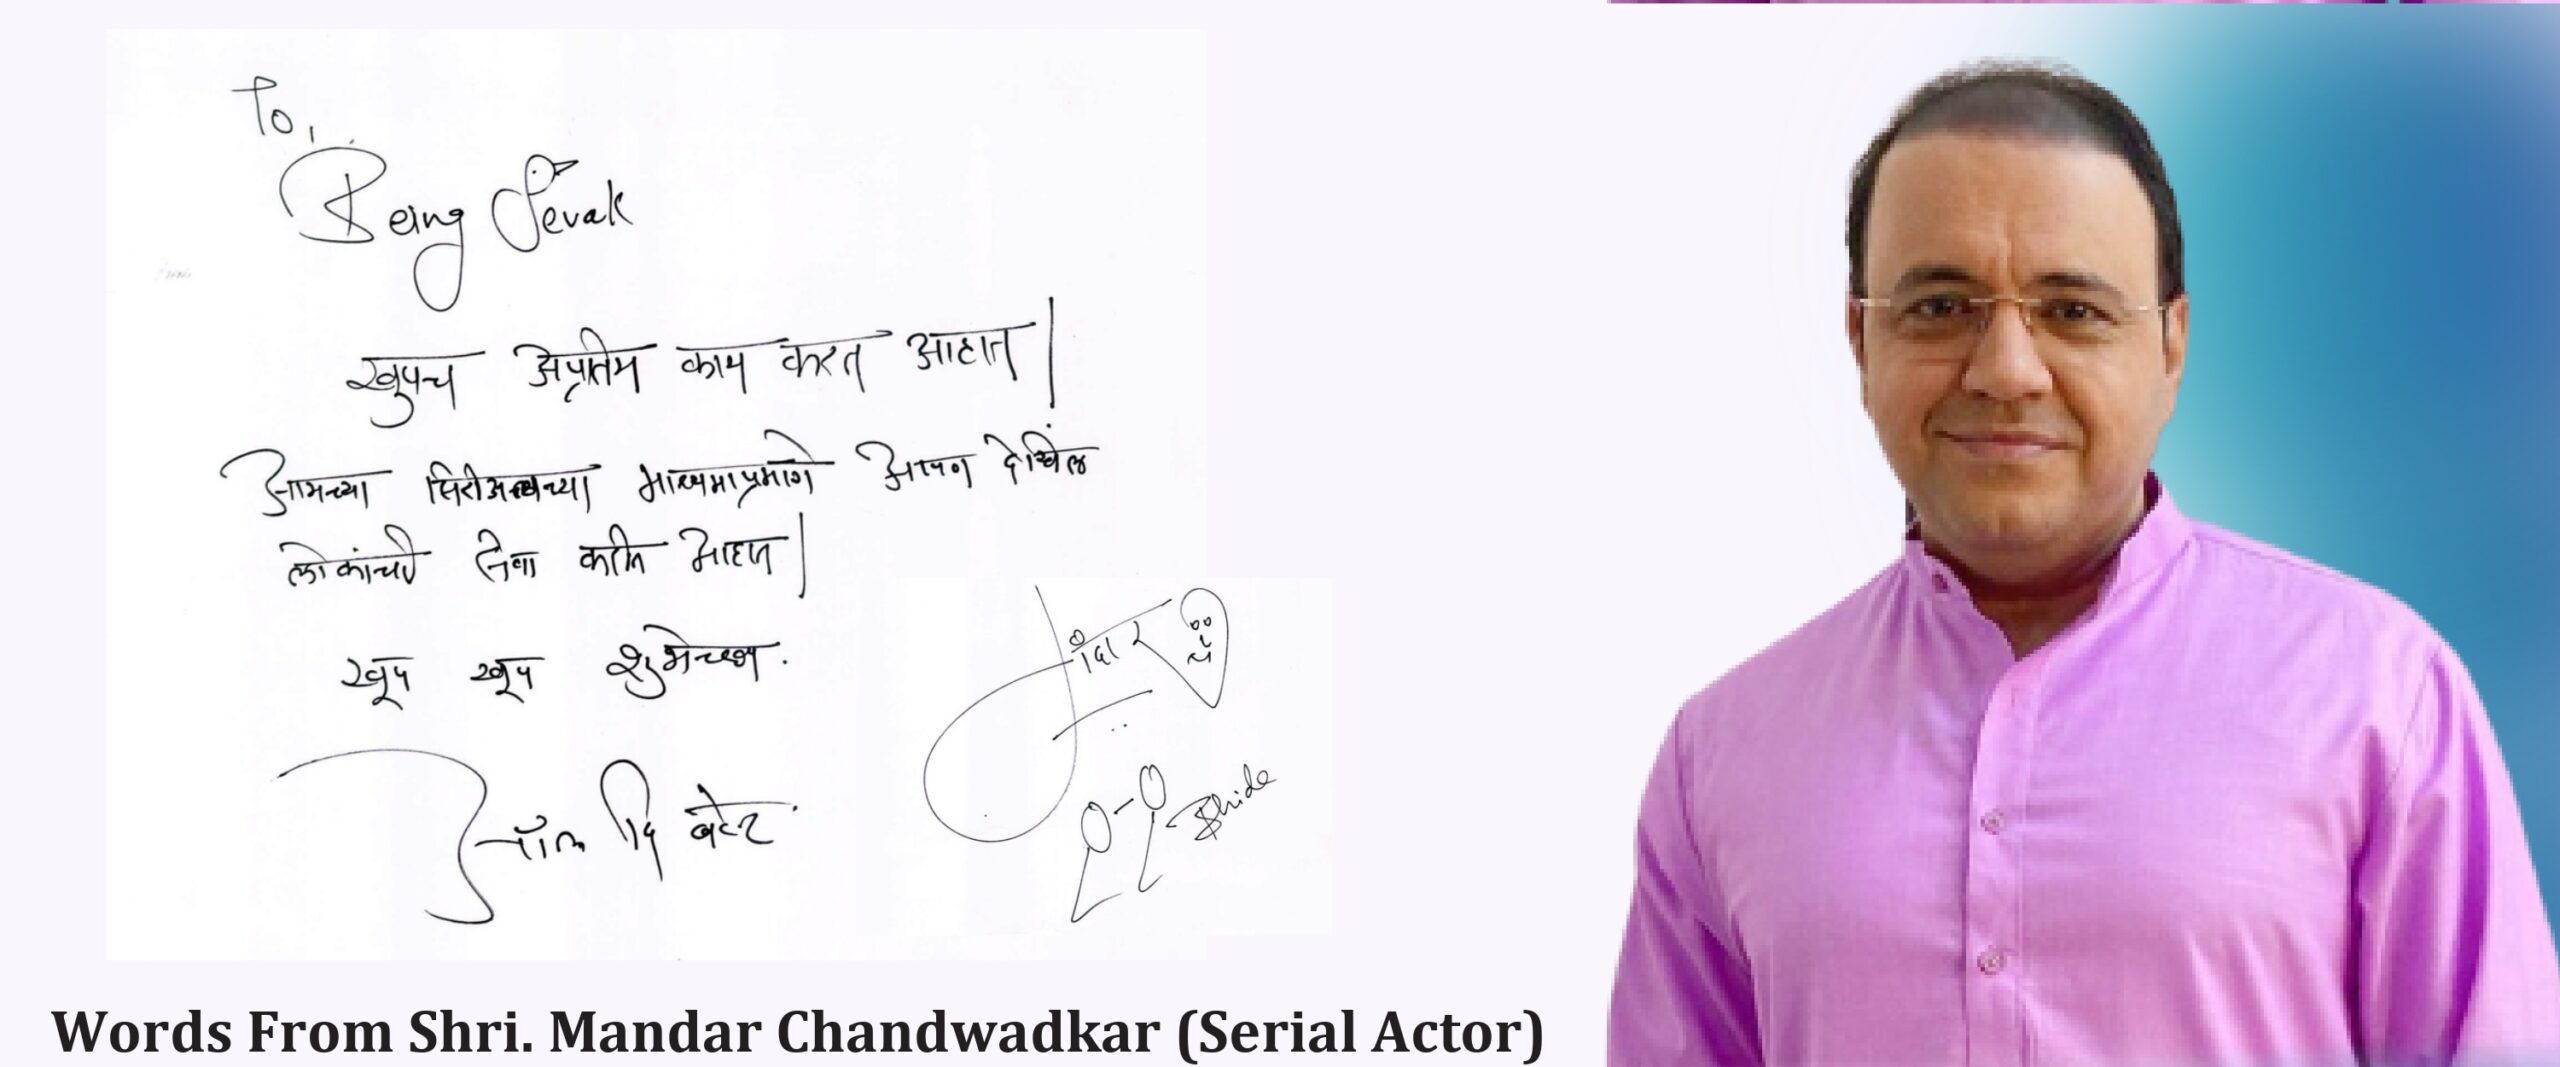 Words From Shri. Mandar Chandwadkar (Serial Actor)